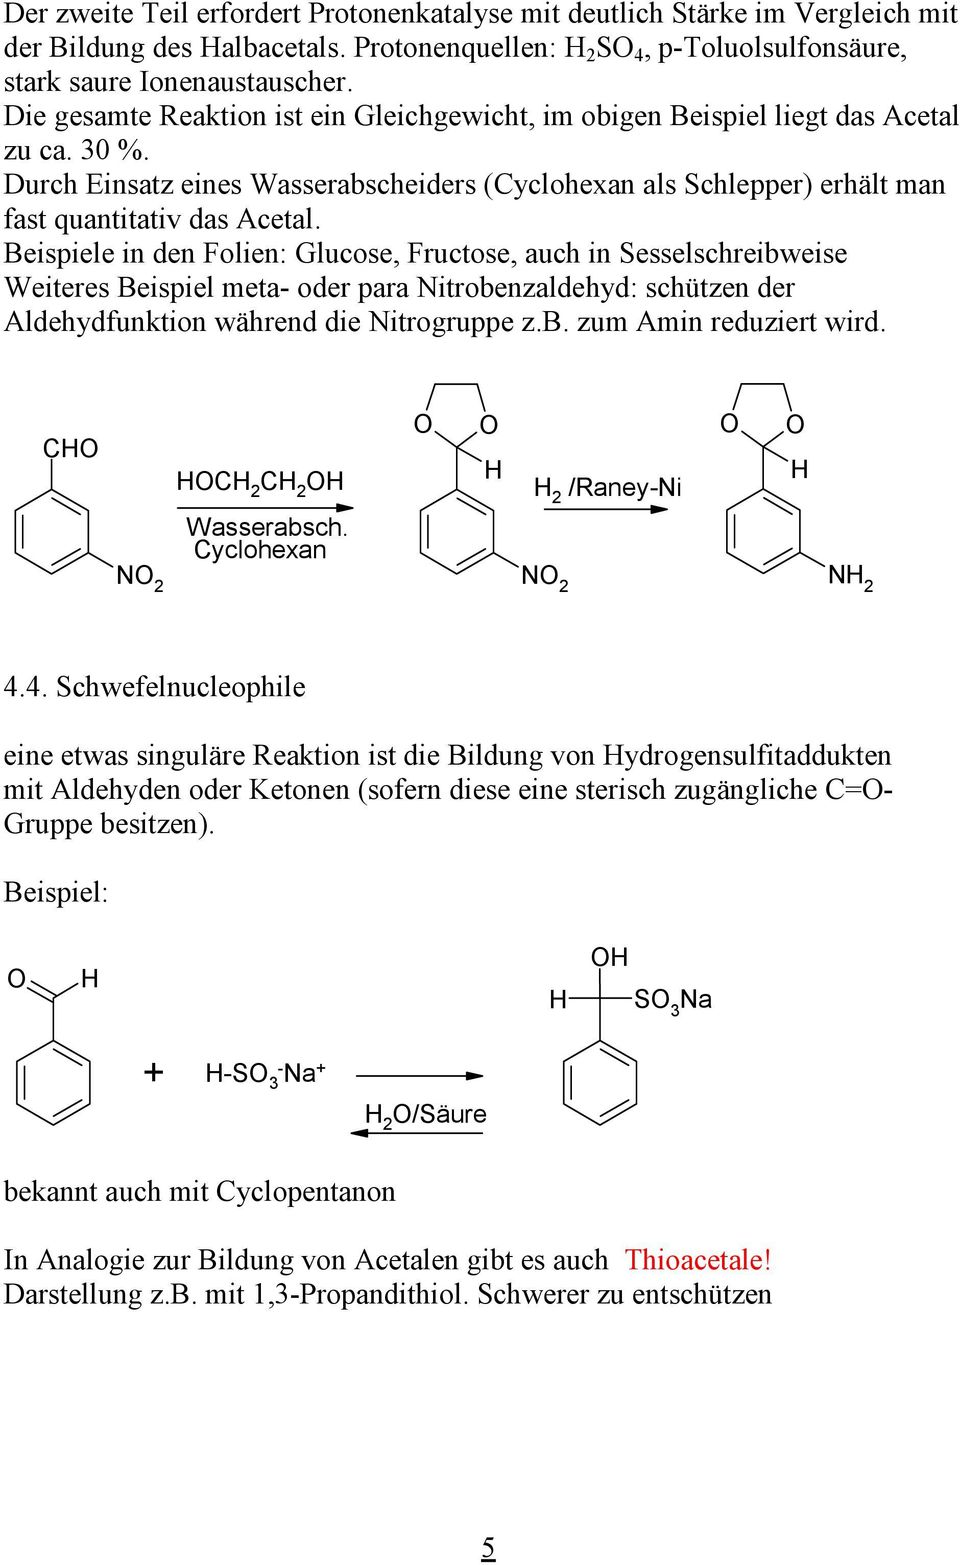 Beispiele in den Folien: Glucose, Fructose, auch in Sesselschreibweise Weiteres Beispiel meta- oder para itrobenzaldehyd: schützen der Aldehydfunktion während die itrogruppe z.b. zum Amin reduziert wird.